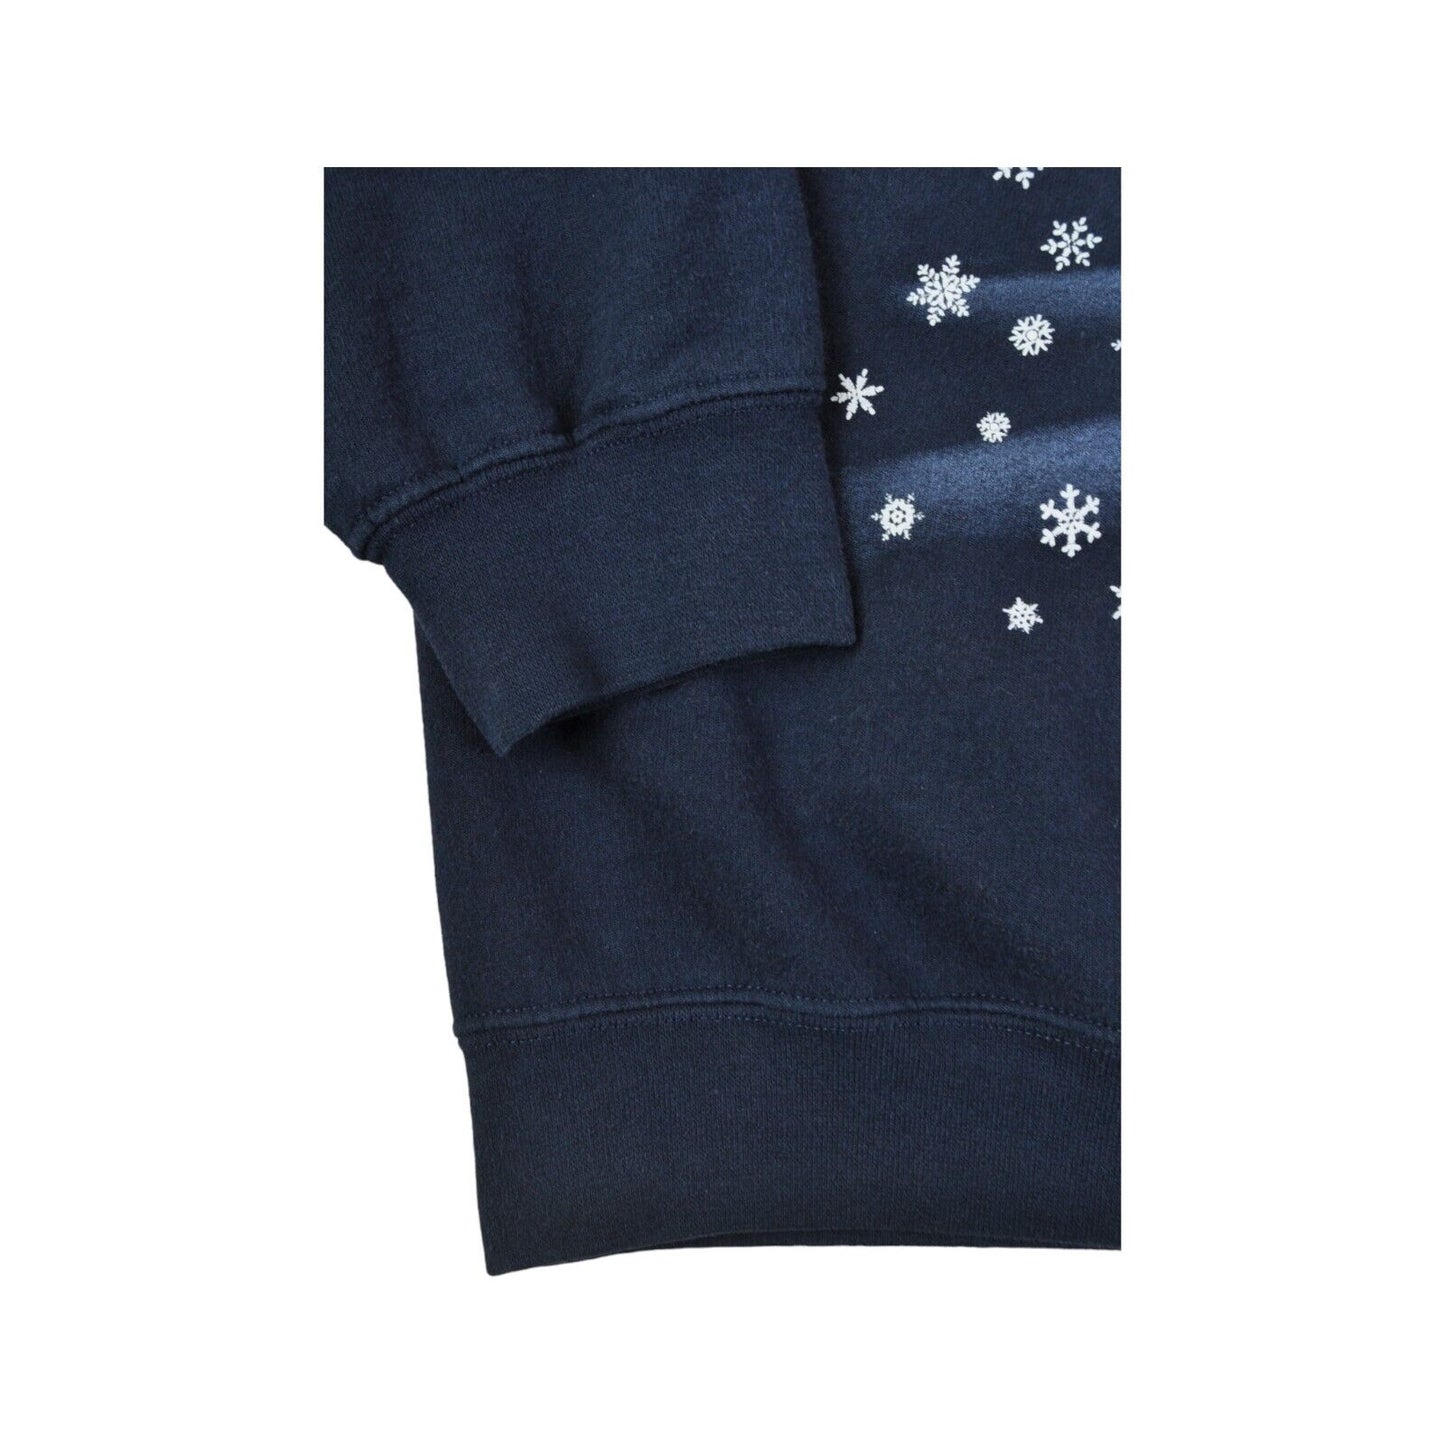 Vintage Christmas Sweatshirt Snowing Bird Print Navy Ladies Large